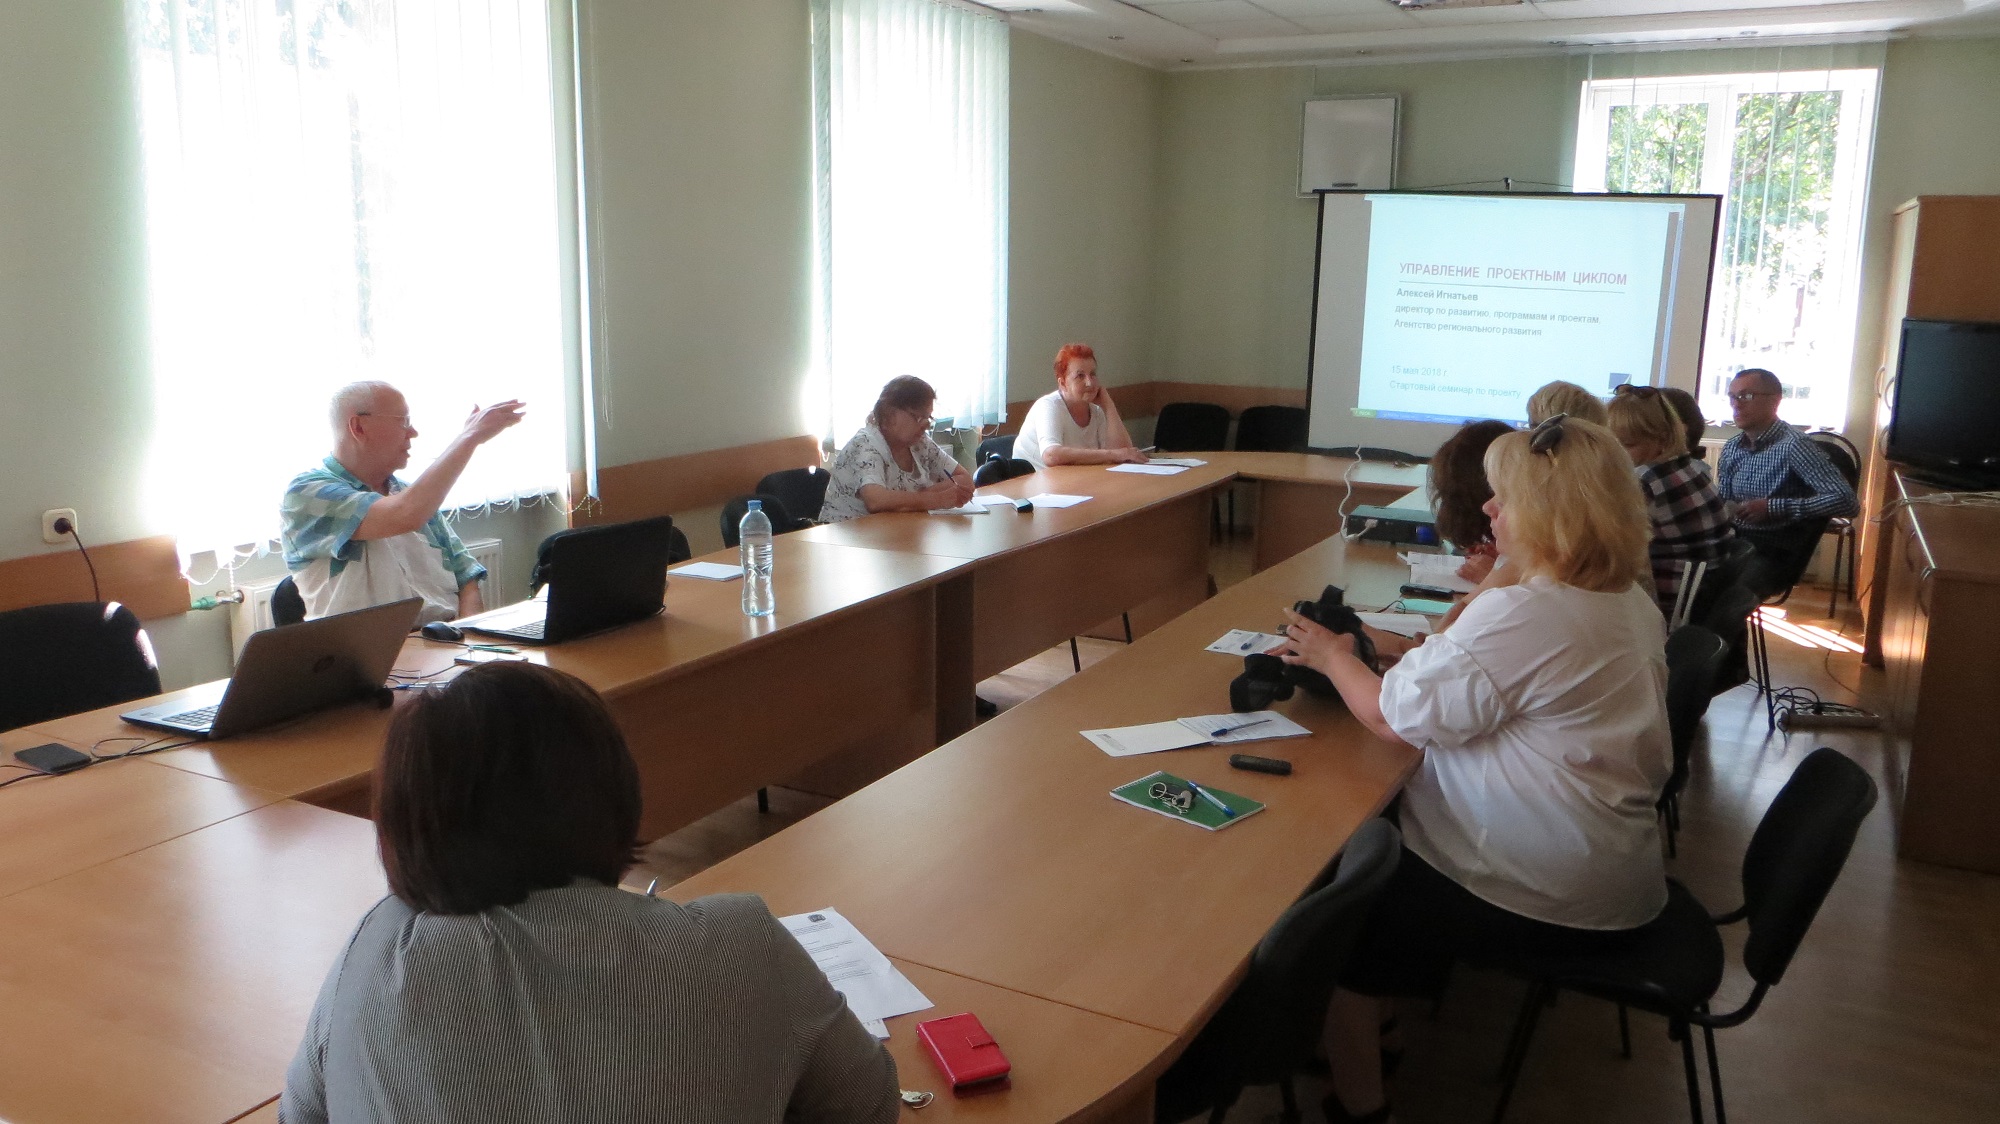 6-я выездная консультационная сессия, посвященная вопросам проектного управления, состоялась в Славске